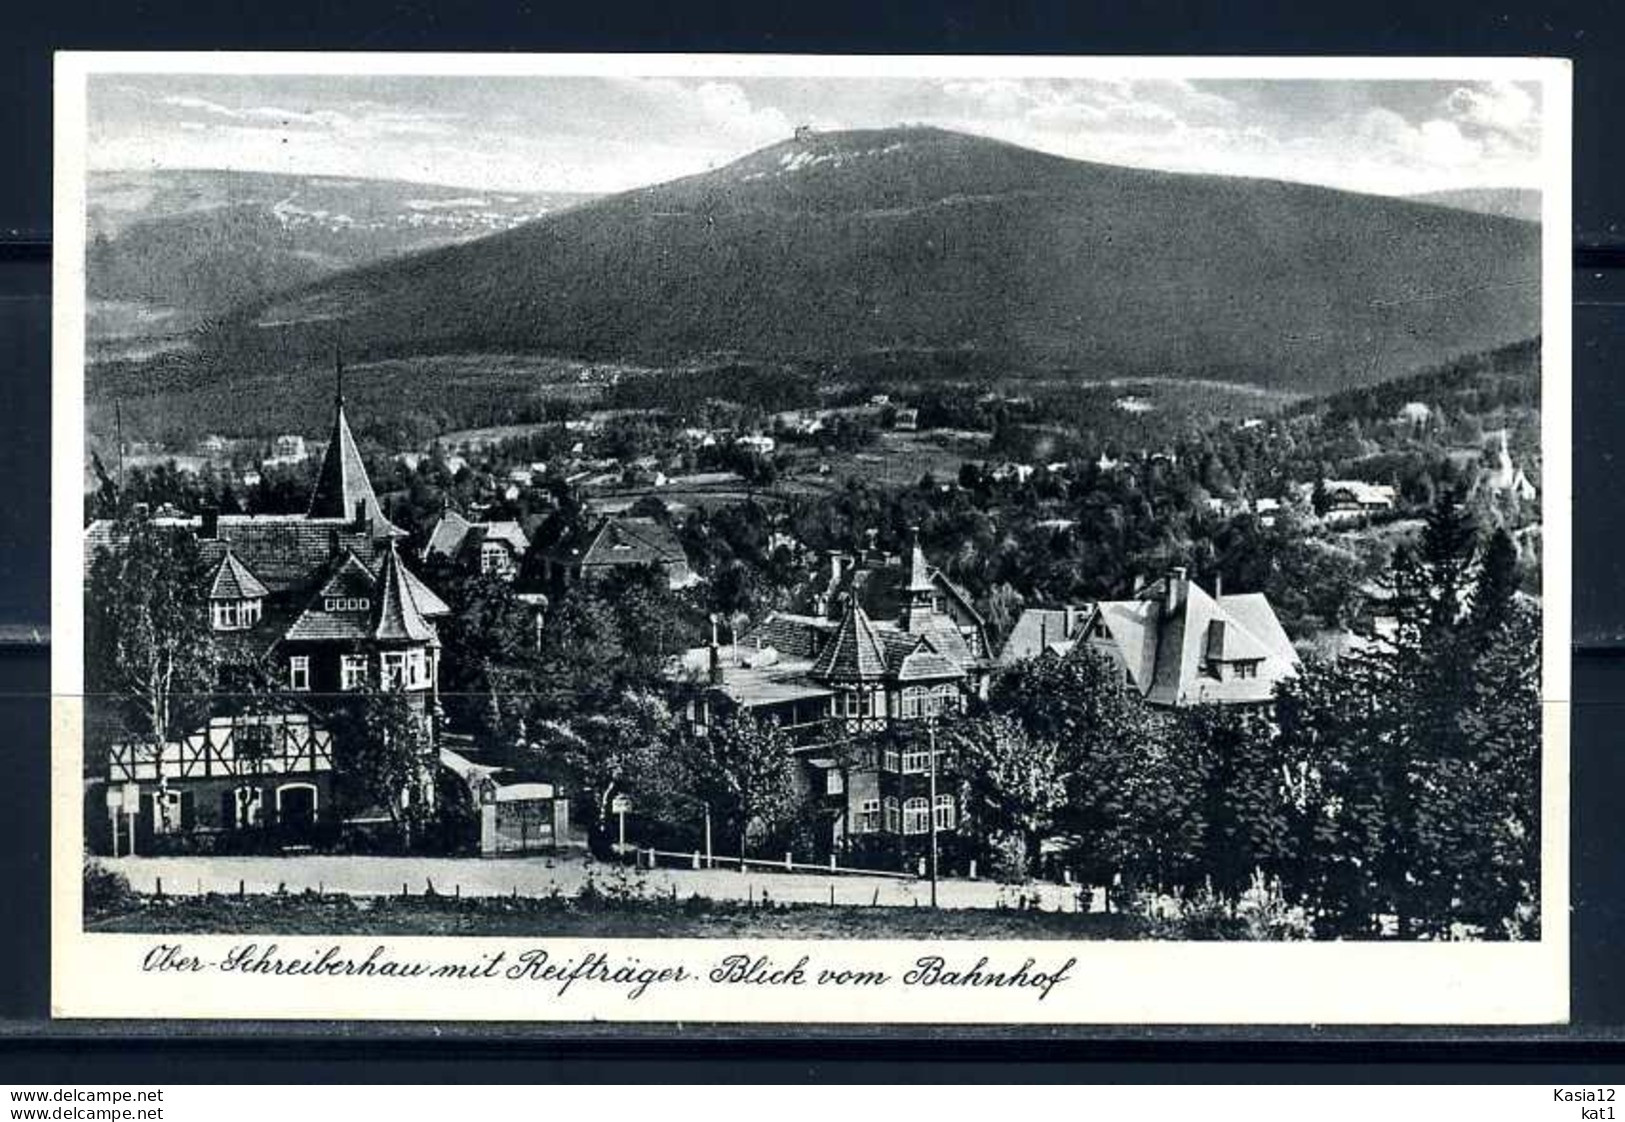 K09876)Ansichtskarte: Ober-Schreiberhau - Sudeten